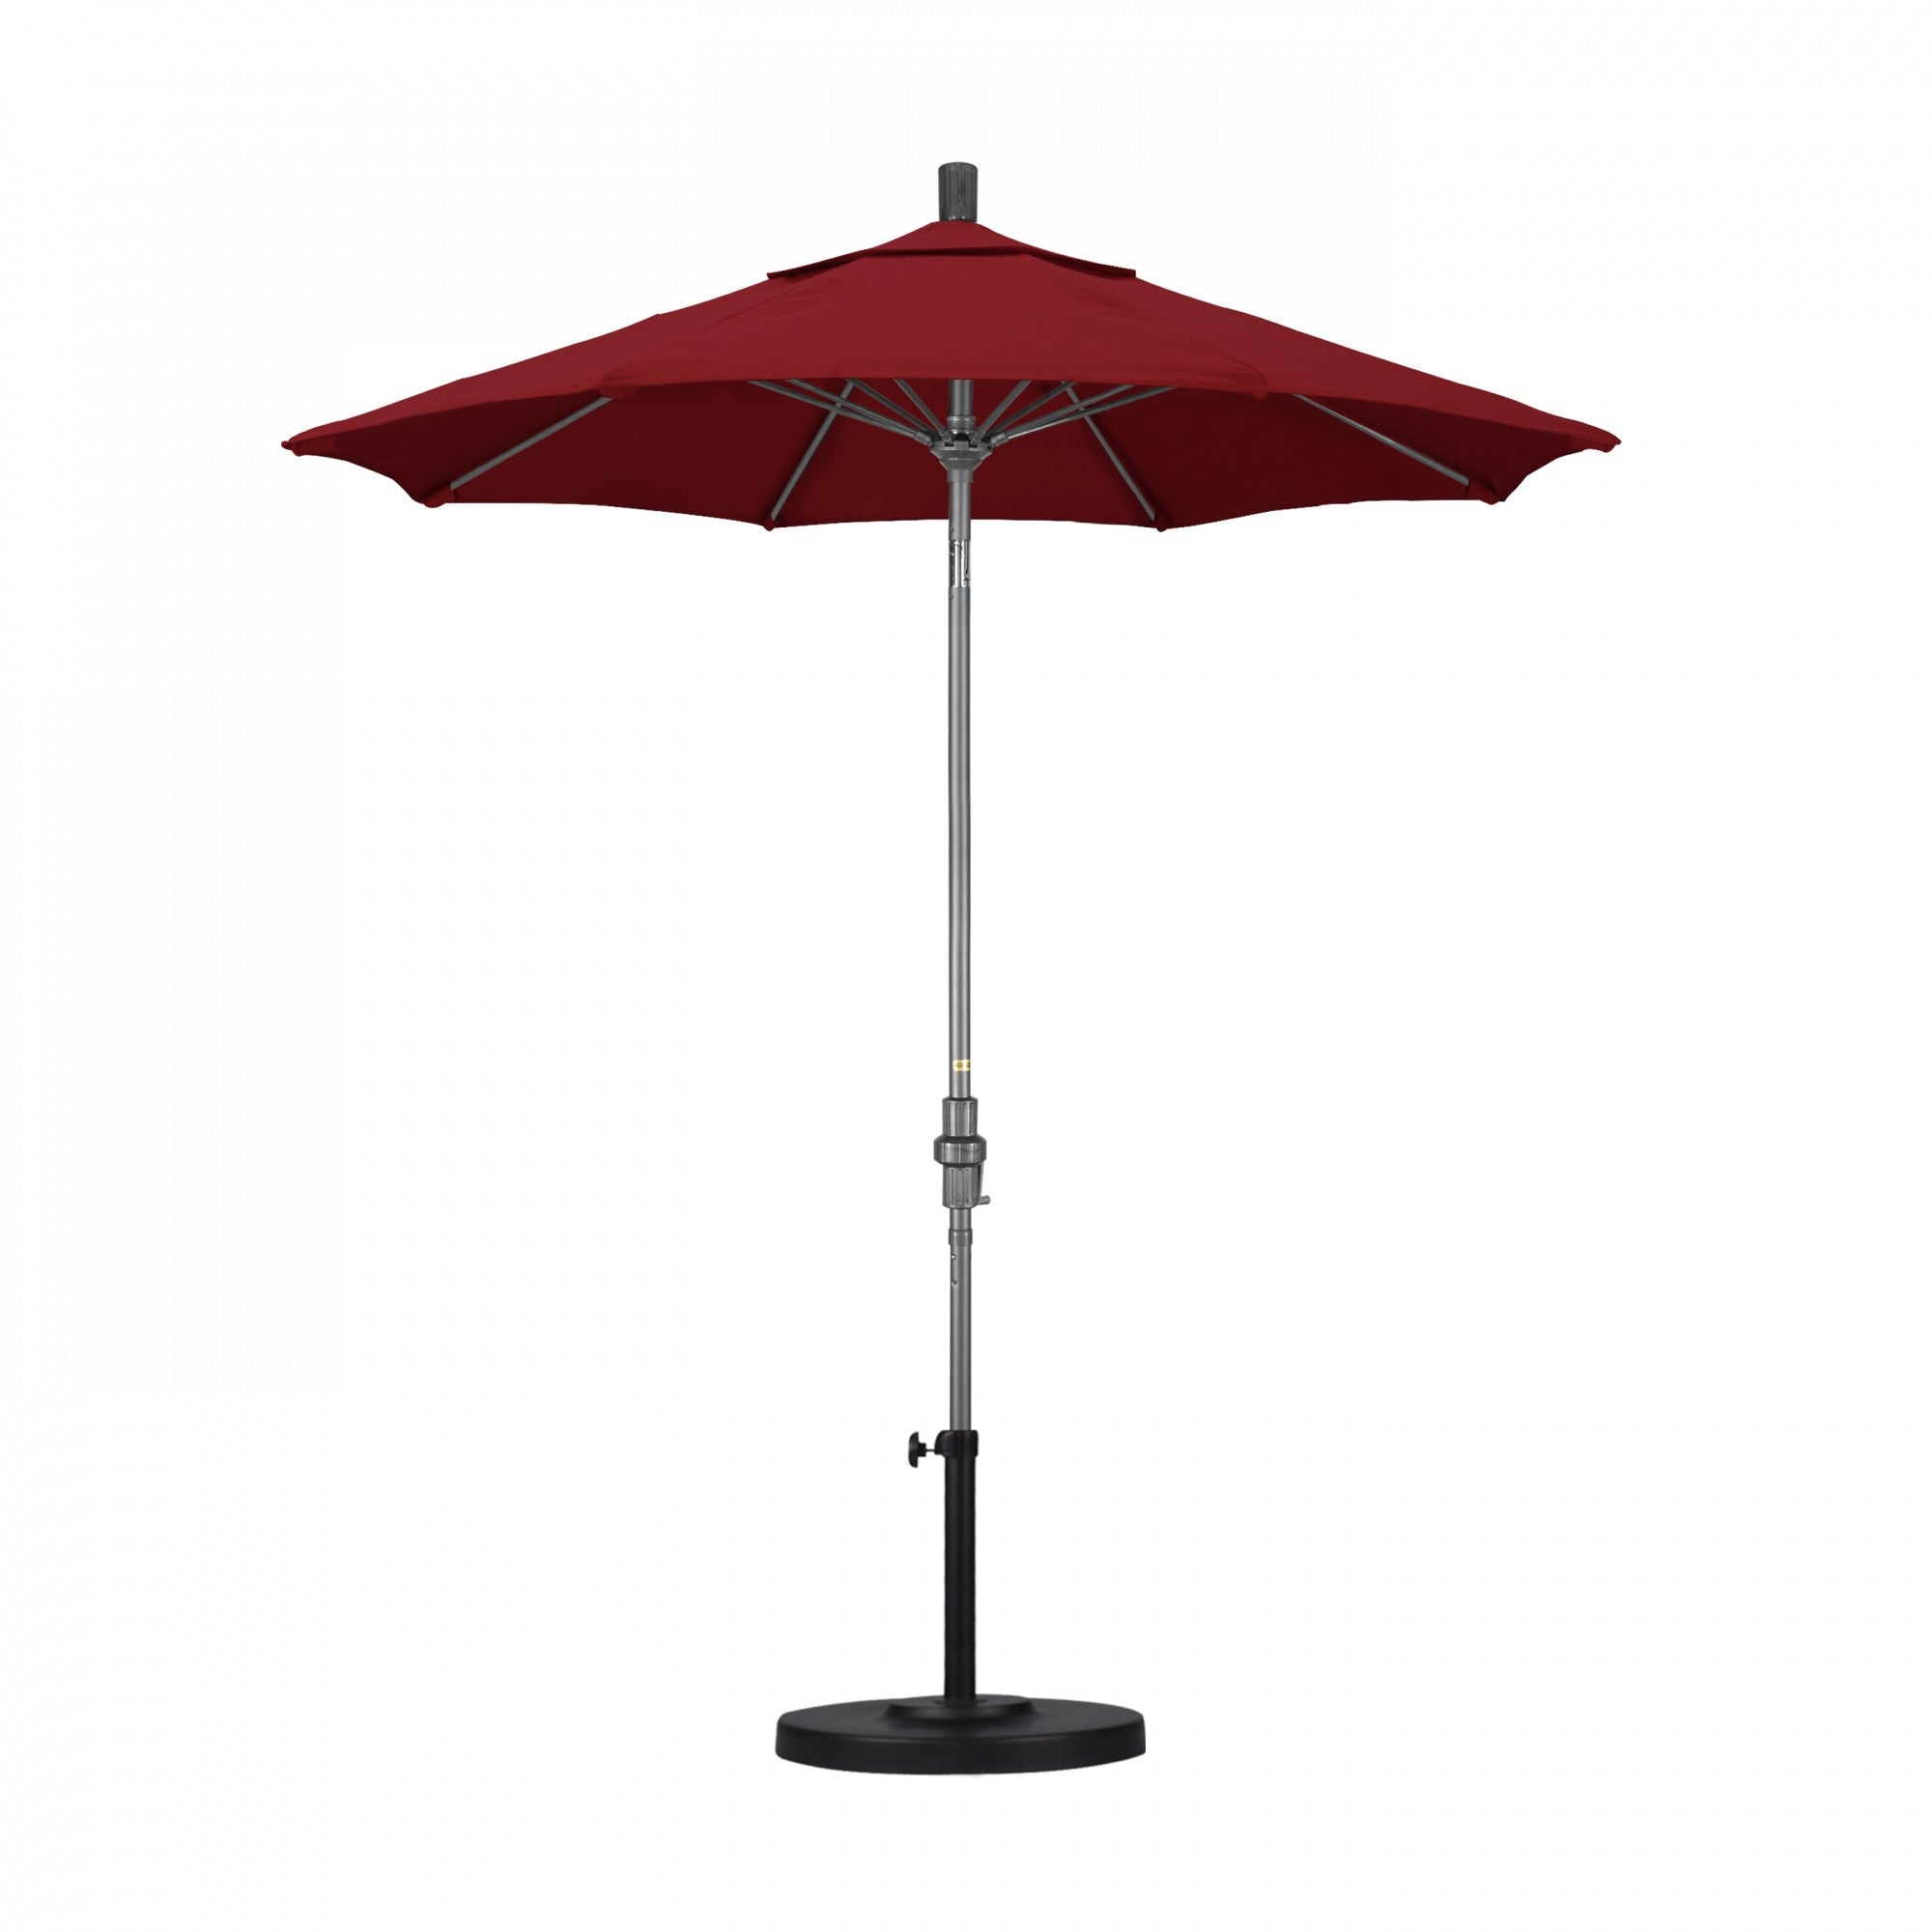 California Umbrella - 7.5' - Patio Umbrella Umbrella - Aluminum Pole - Red - Olefin - GSCUF758010-F13